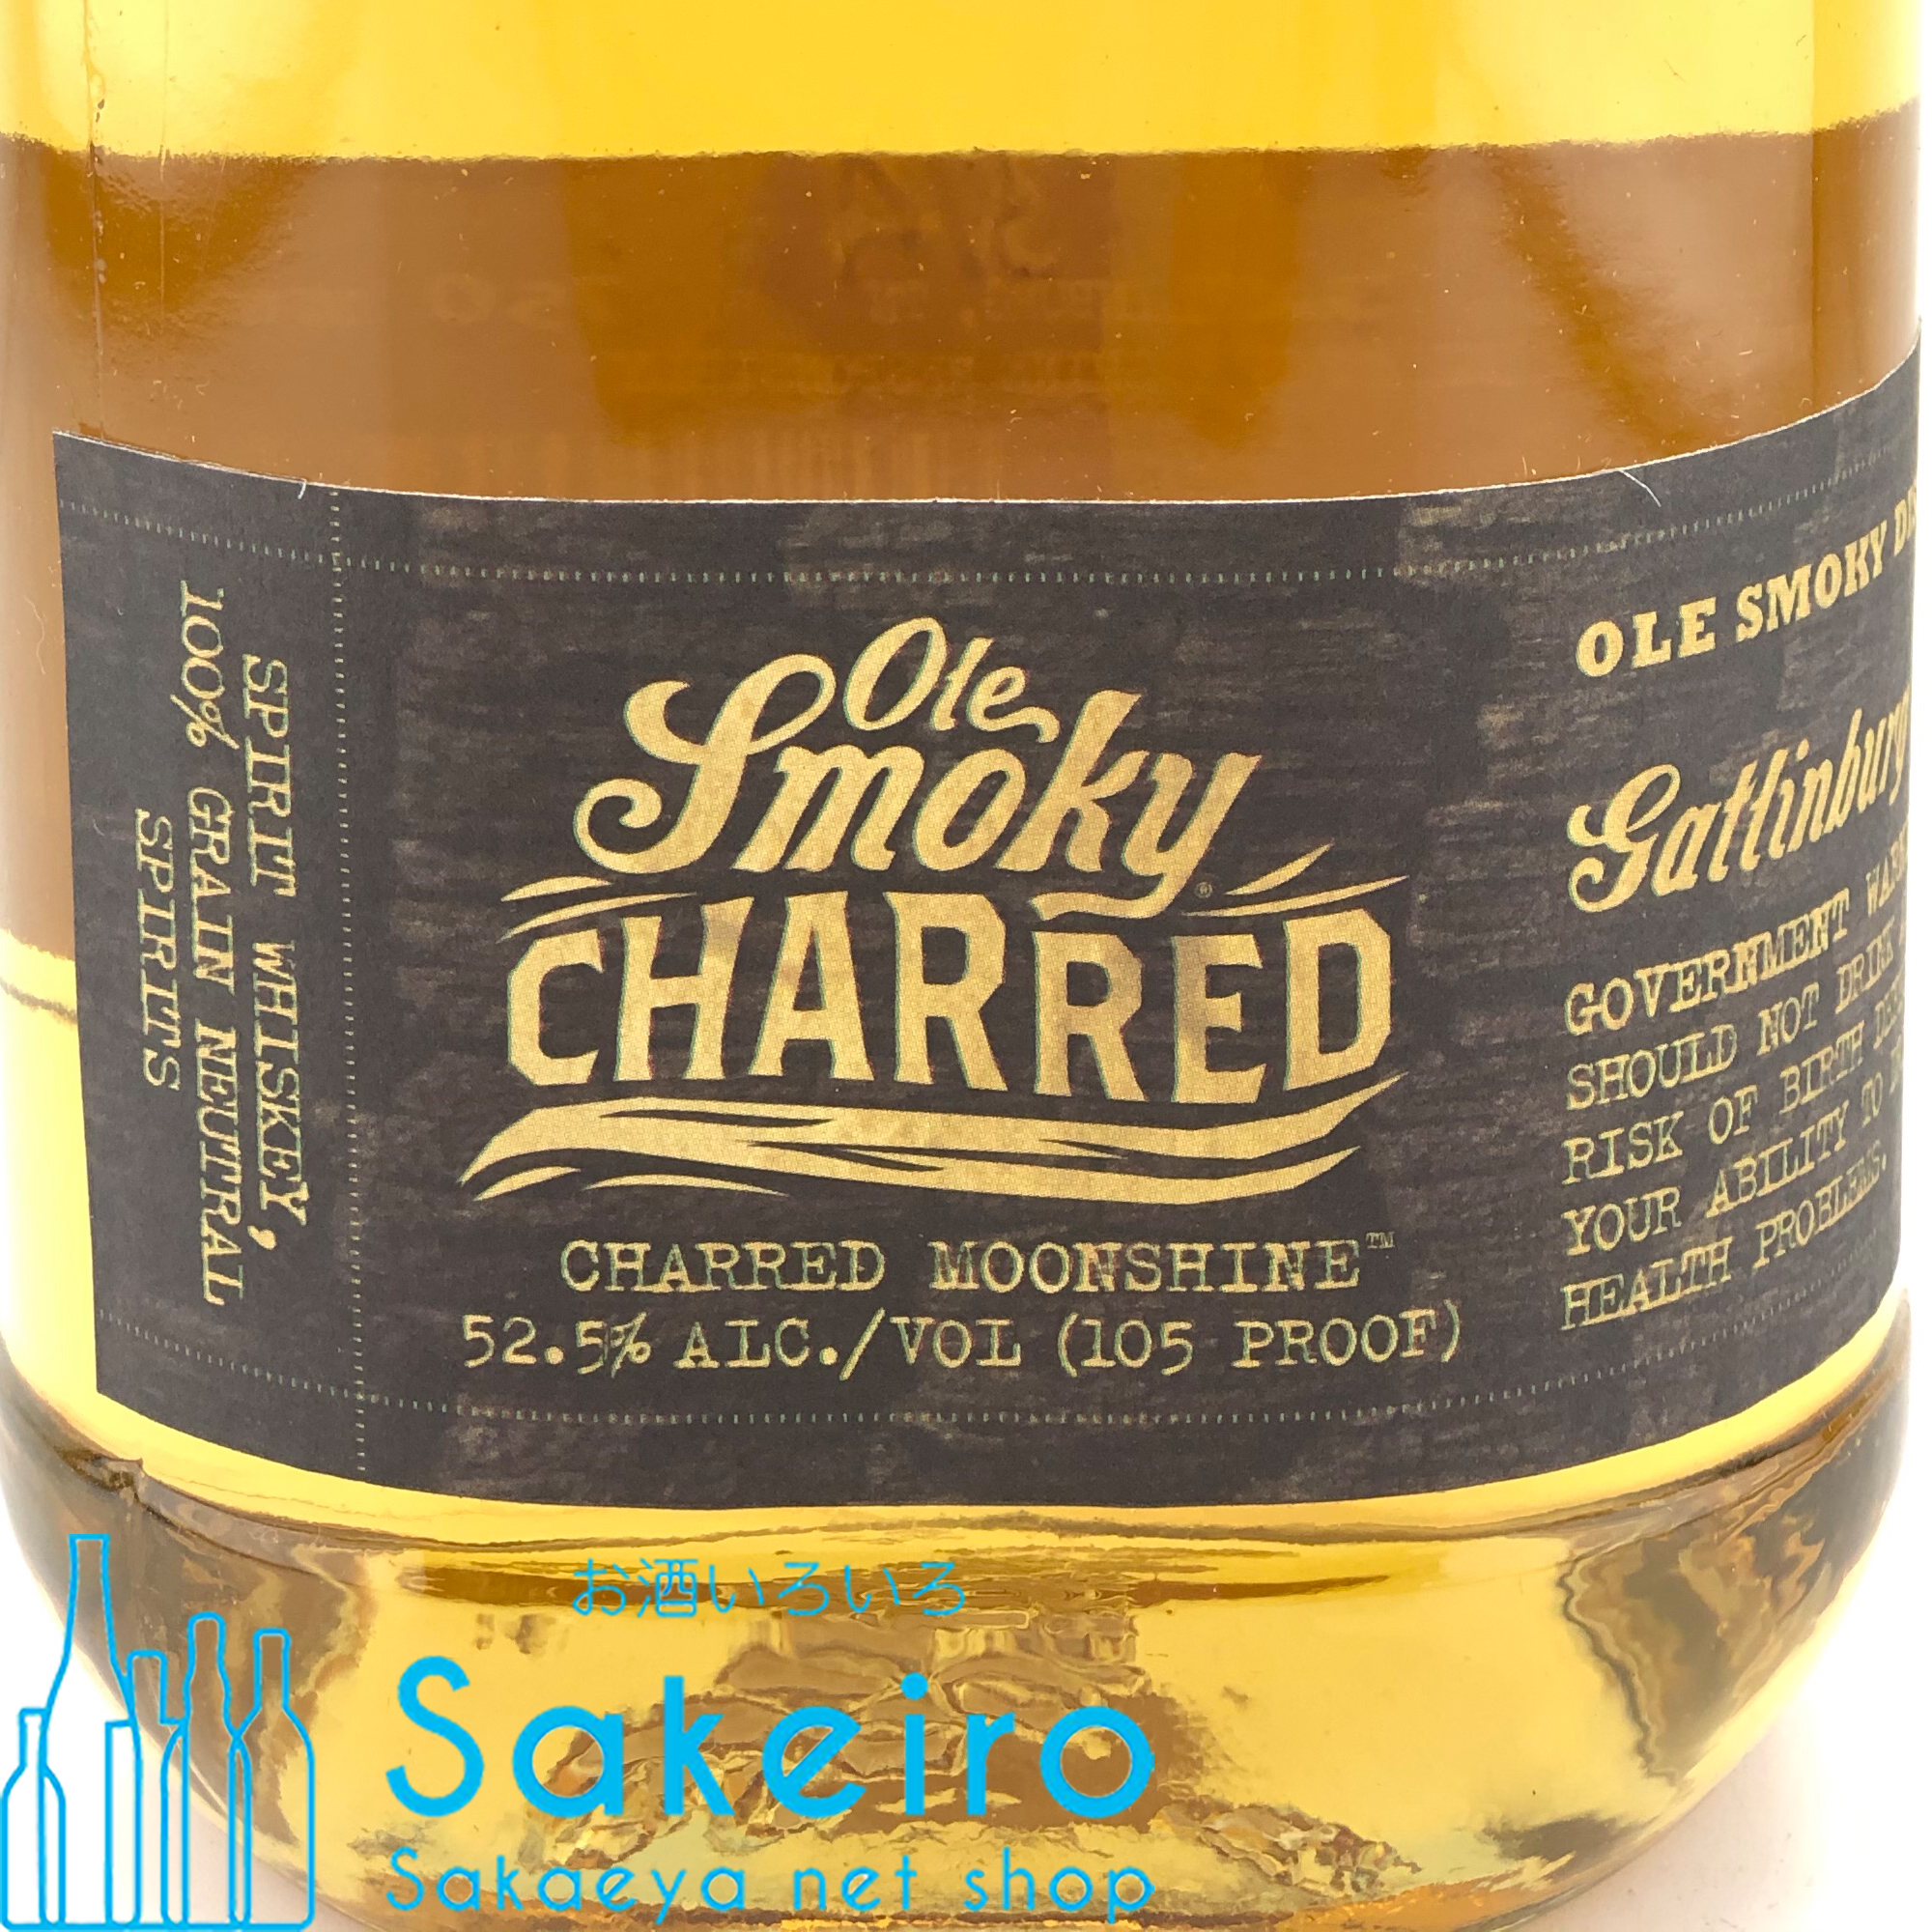 オーレ スモーキー チャード ムーンシャイン 52.5％ 750ml - お酒いろいろ Sakeiro -Sakaeya net shop-